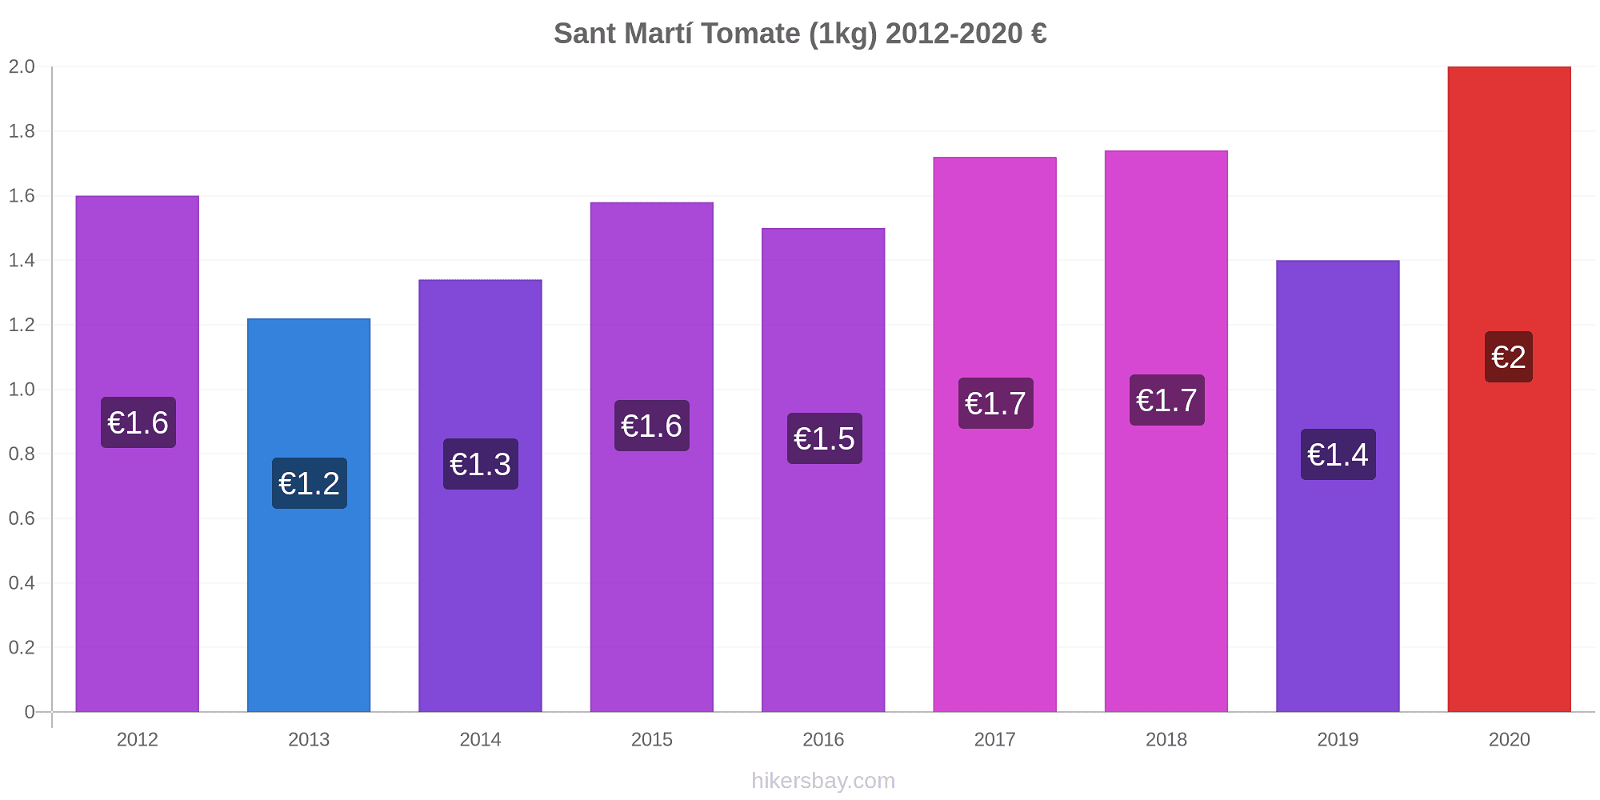 Sant Martí variação de preço Tomate (1kg) hikersbay.com